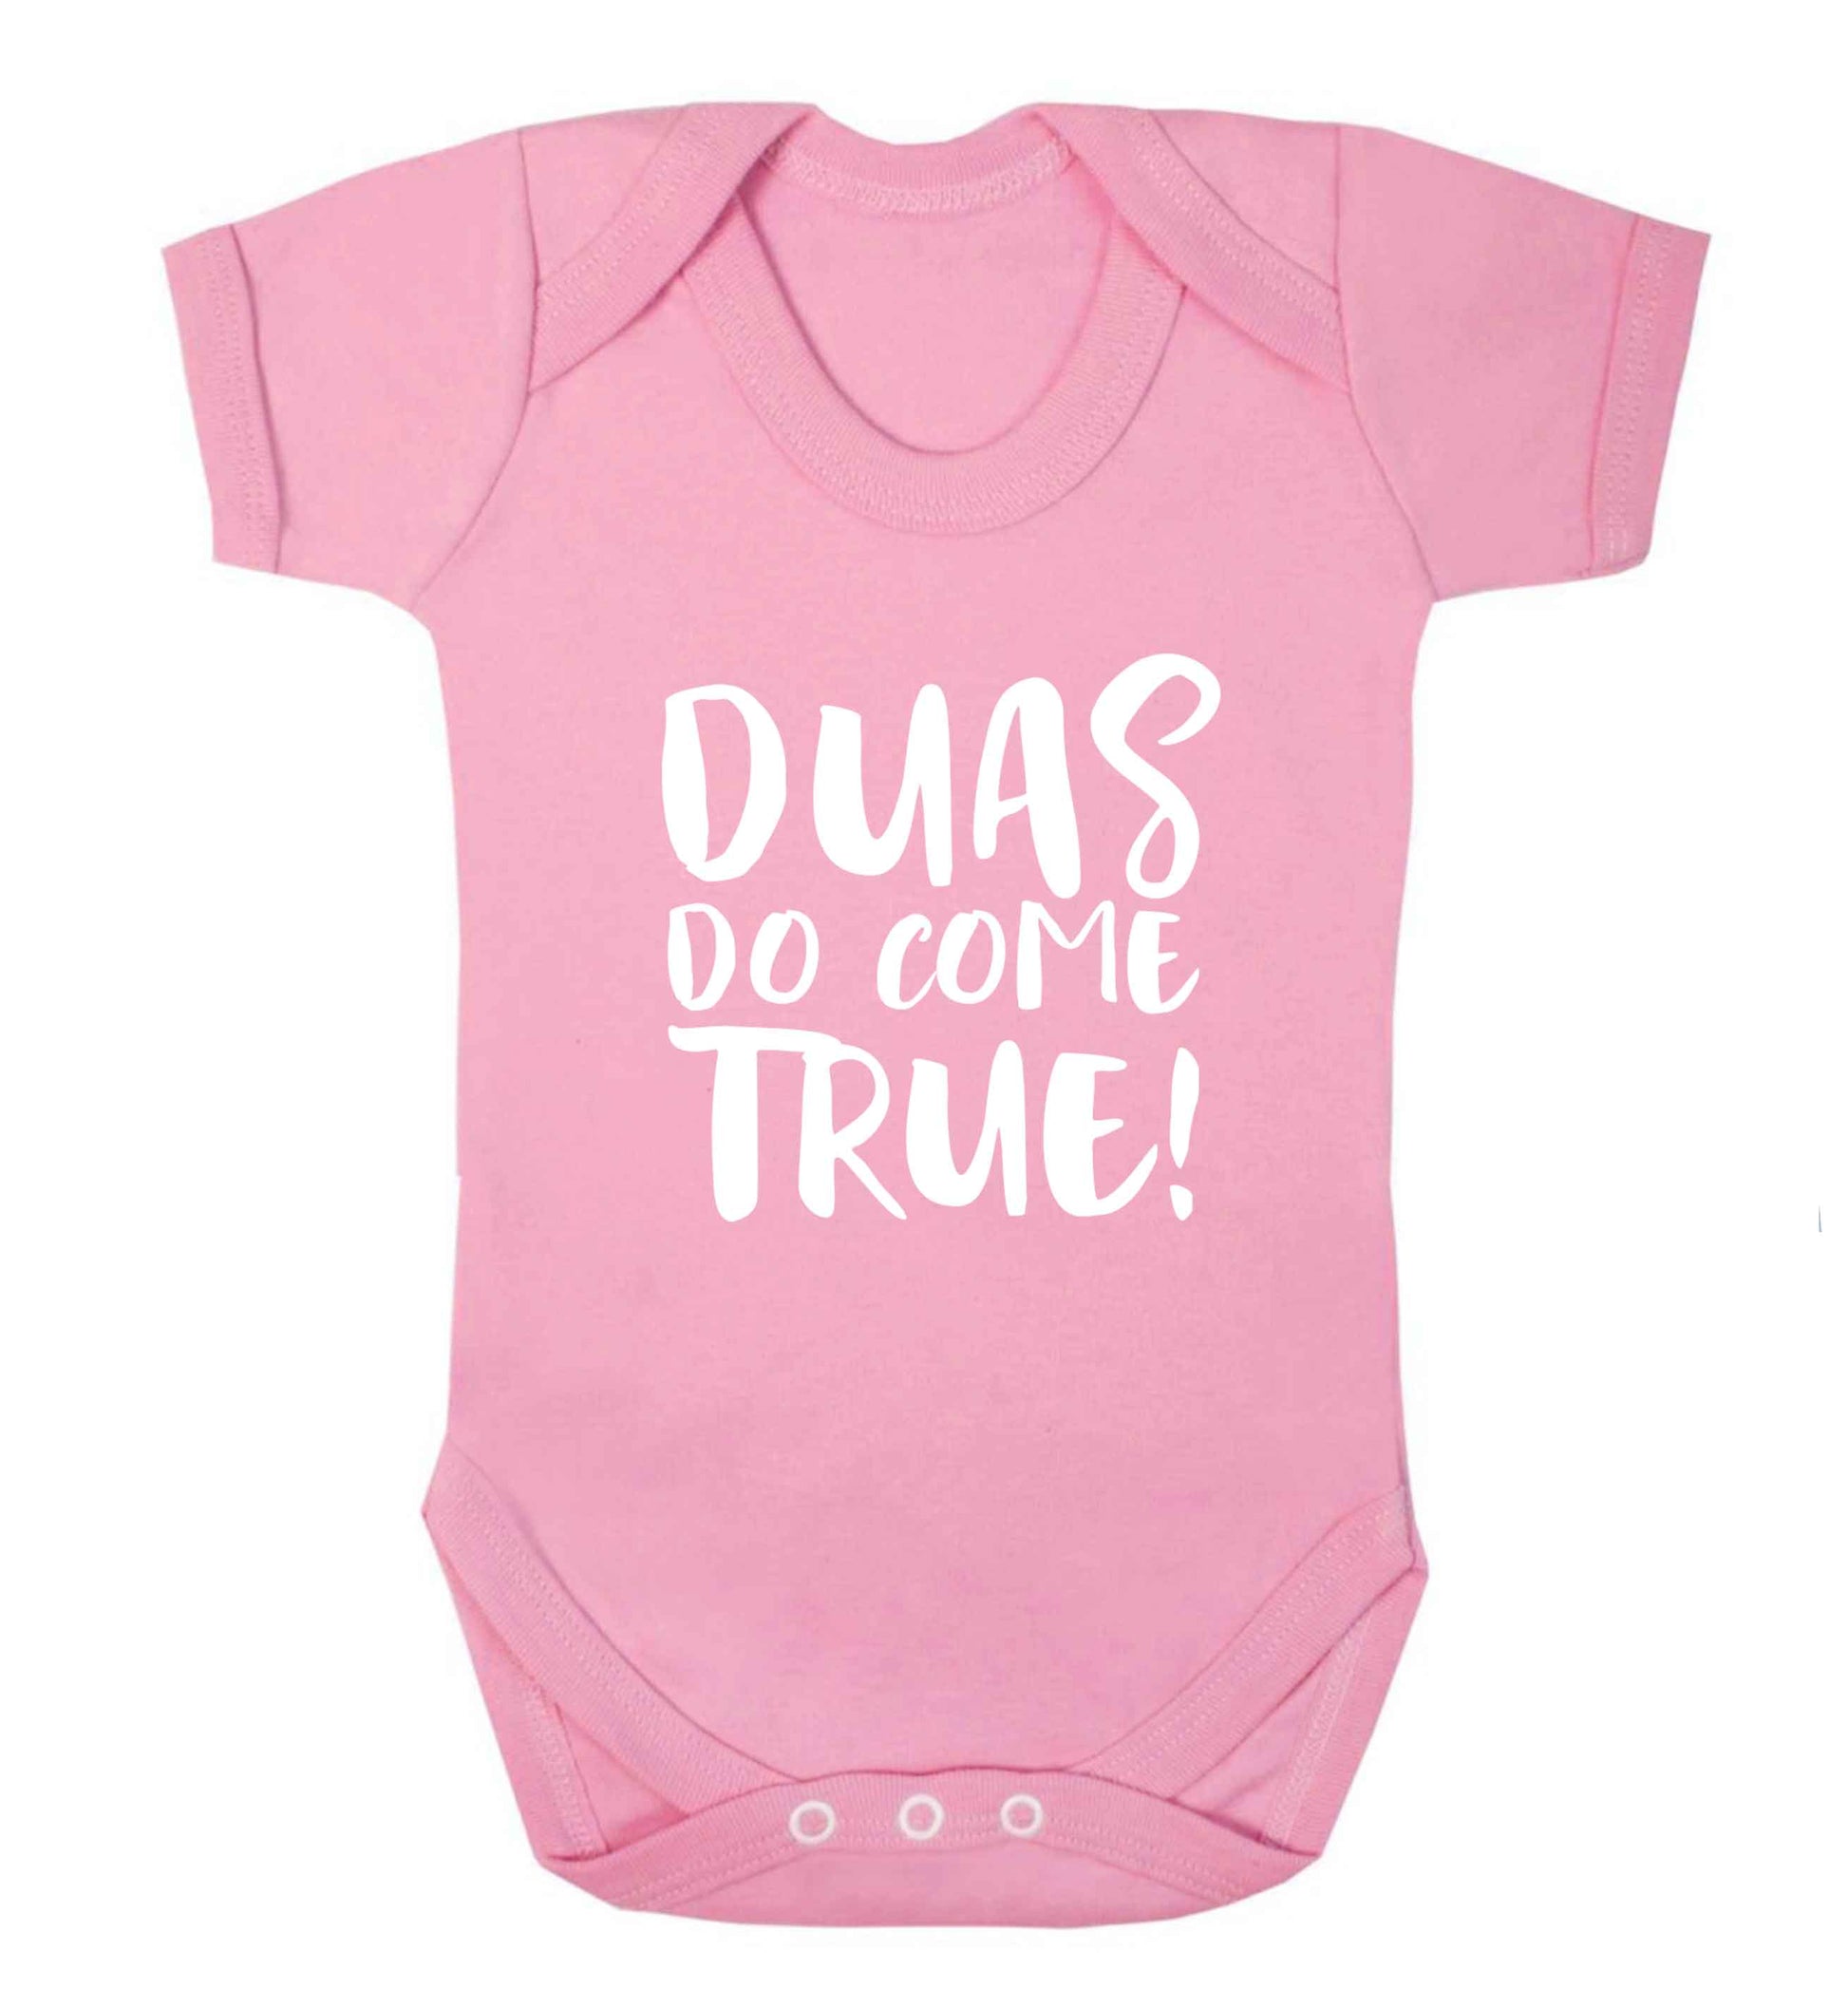 Duas do come true baby vest pale pink 18-24 months